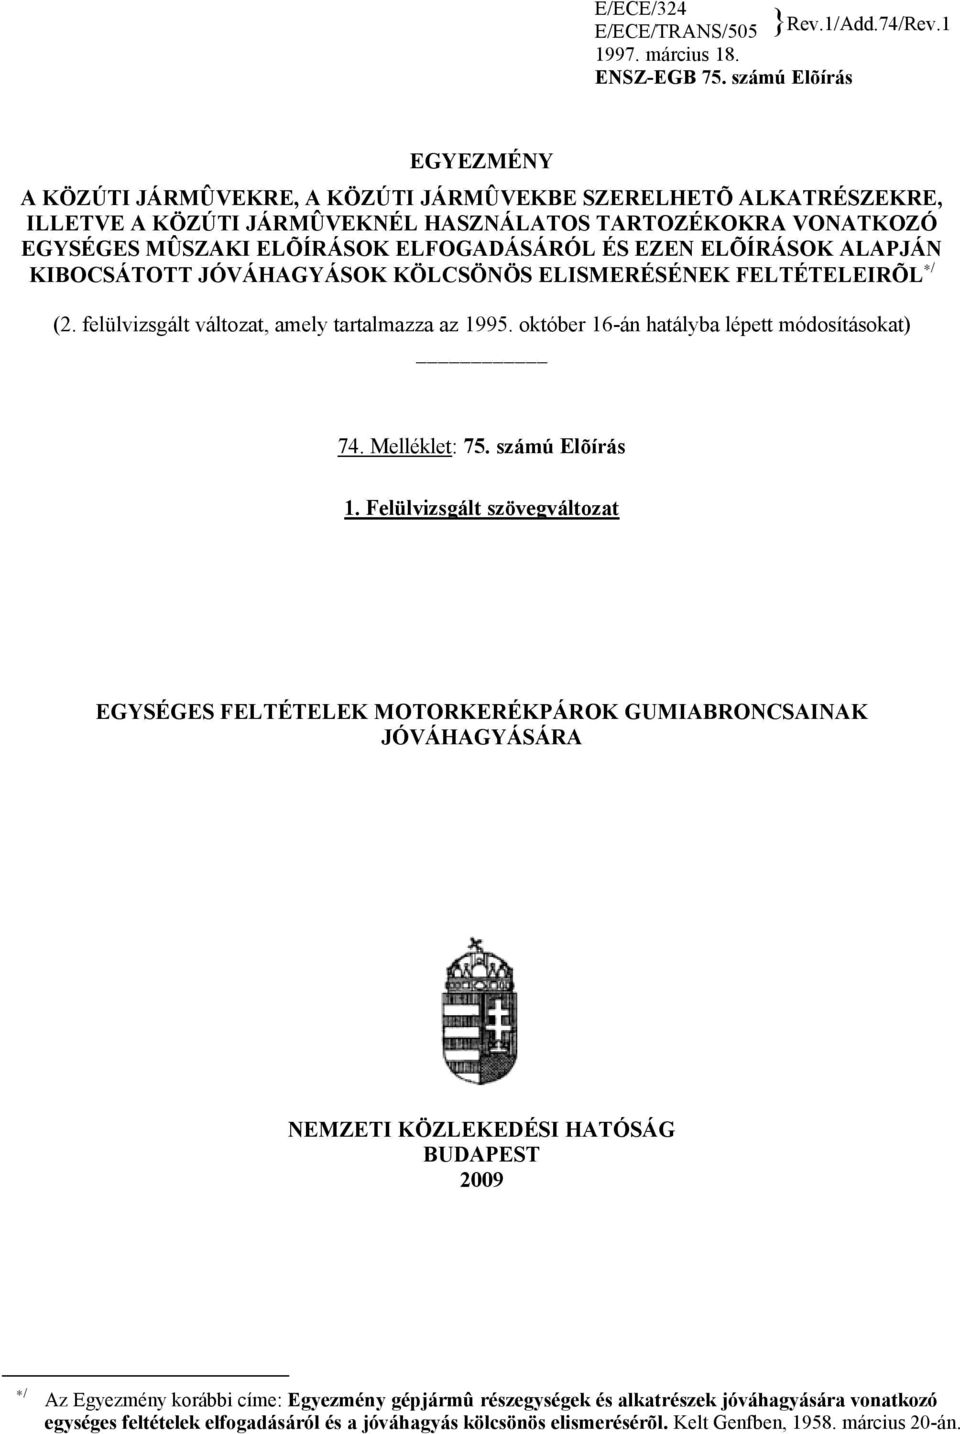 EZEN ELÕÍRÁSOK ALAPJÁN KIBOCSÁTOTT JÓVÁHAGYÁSOK KÖLCSÖNÖS ELISMERÉSÉNEK FELTÉTELEIRÕL / (2. felülvizsgált változat, amely tartalmazza az 1995. október 16-án hatályba lépett módosításokat) 74.